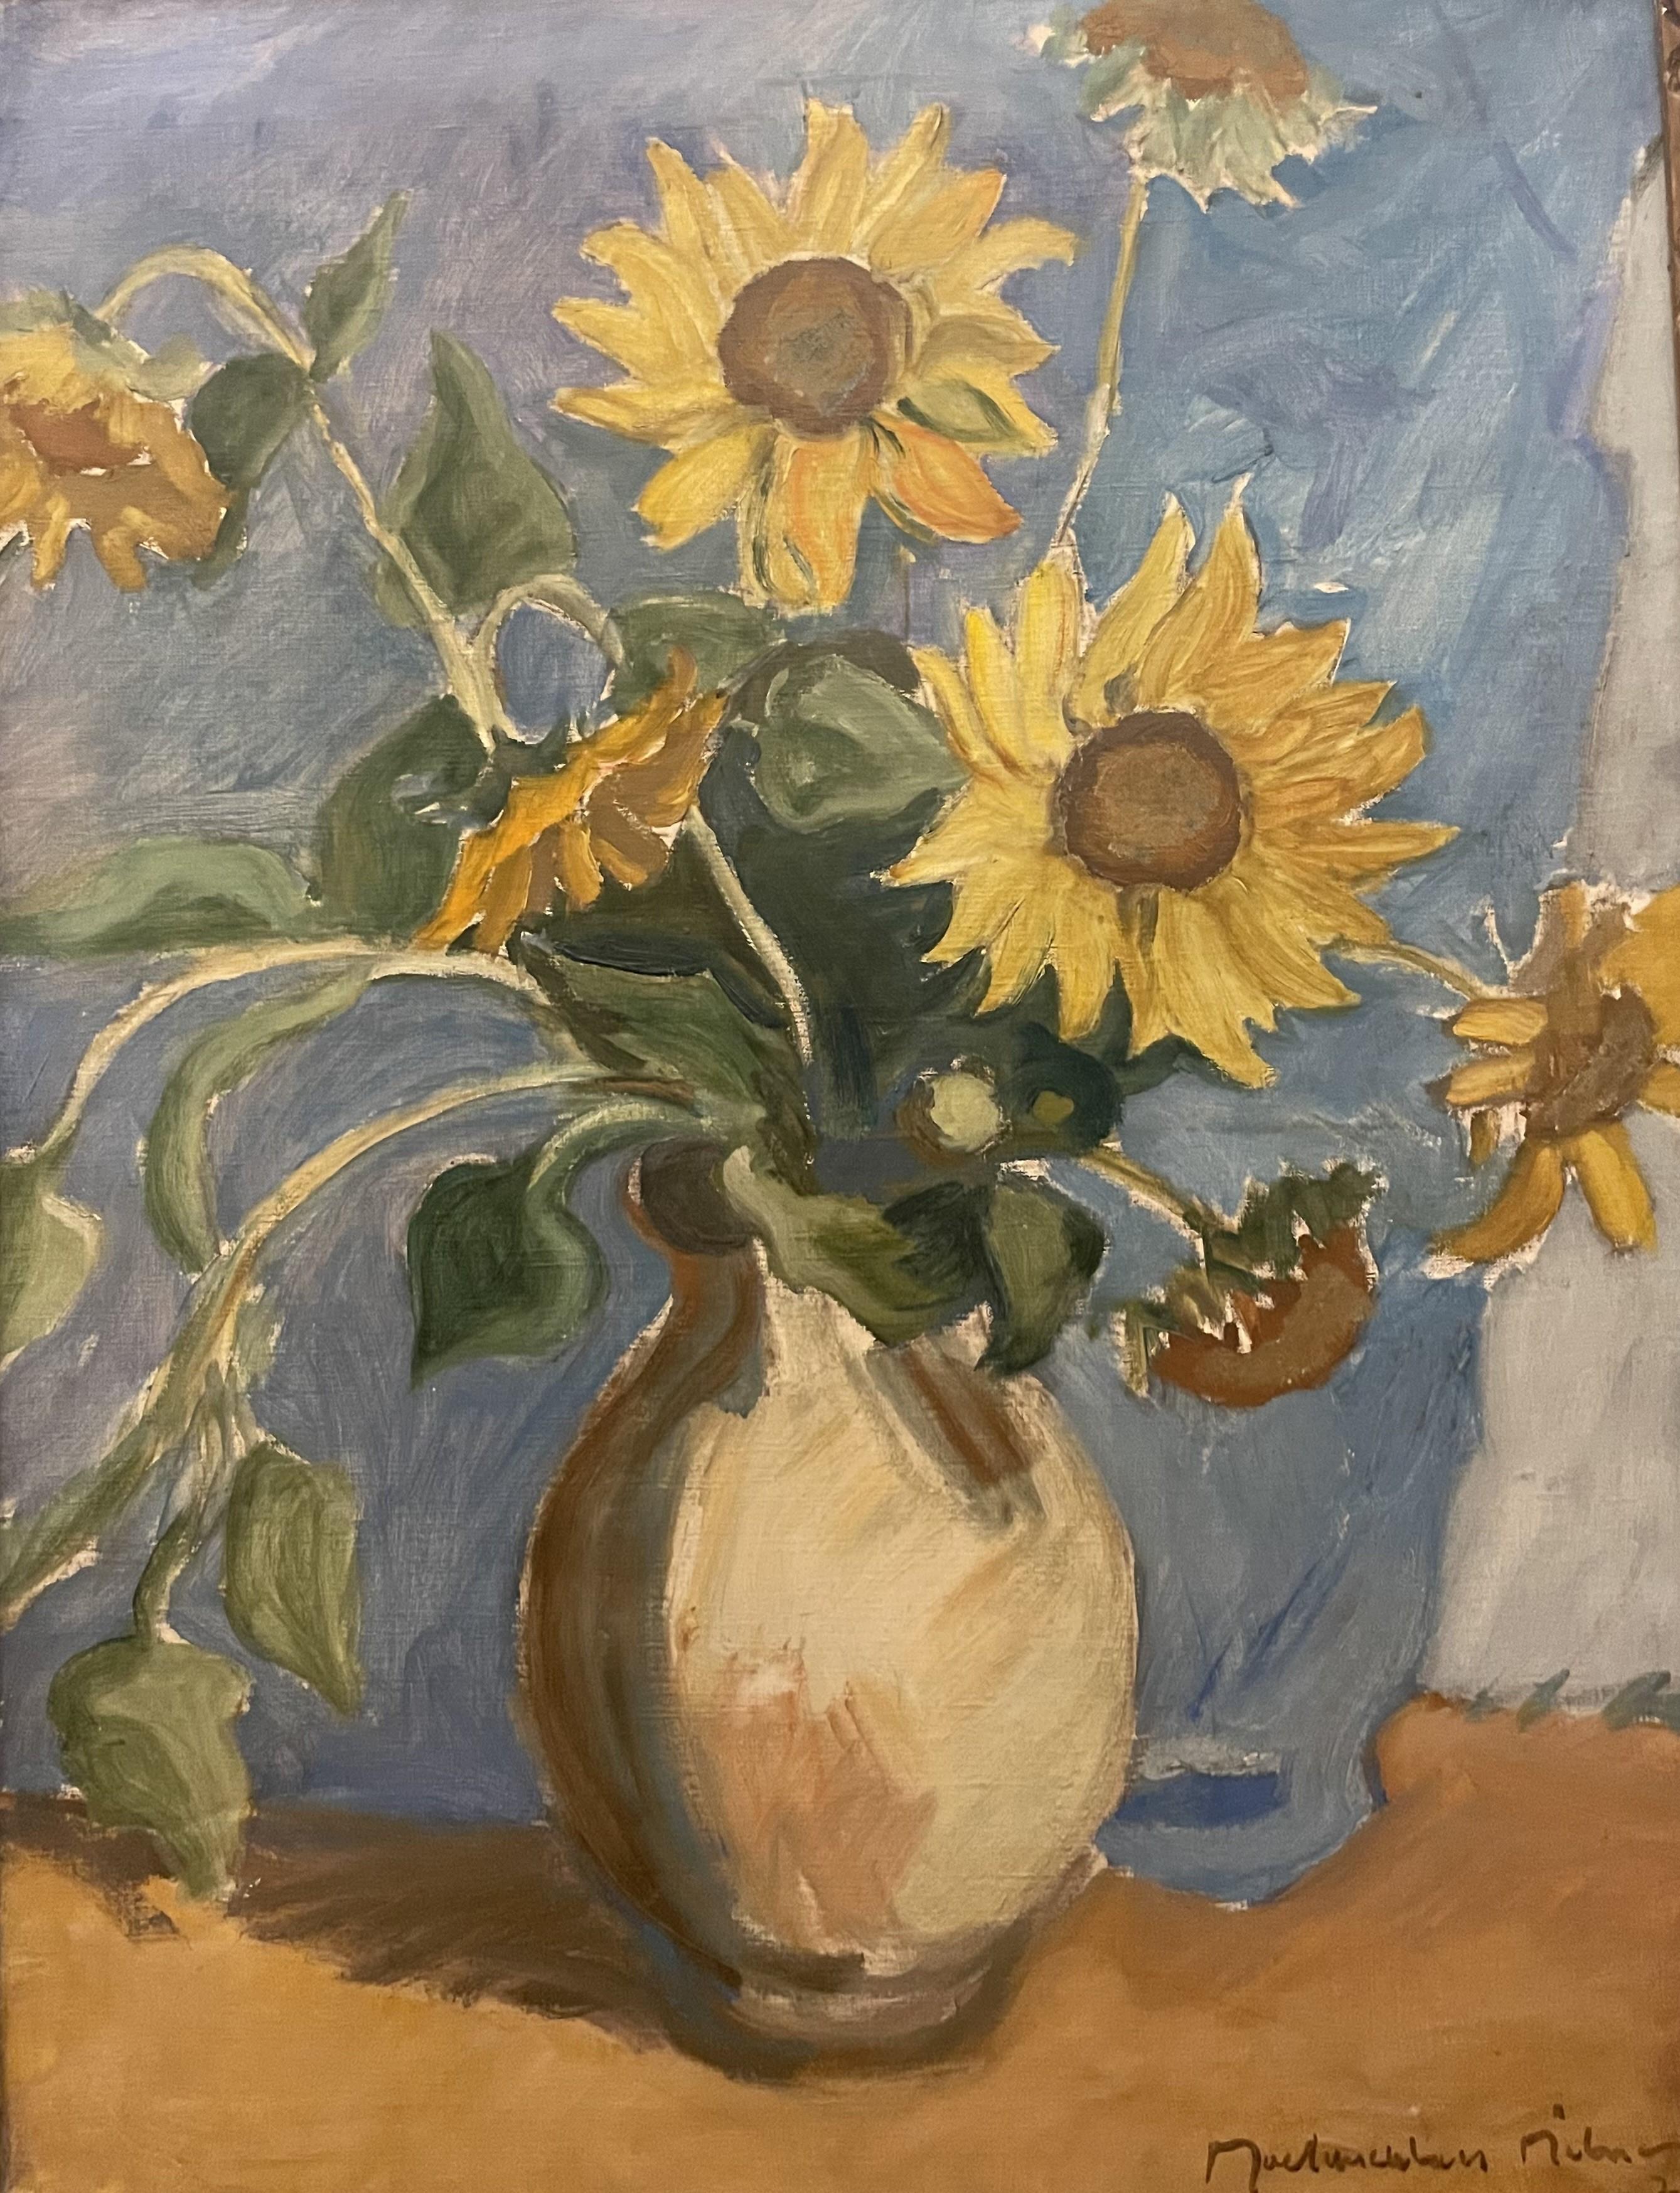 Sunflowers - Painting by John Maclauchlan Milne